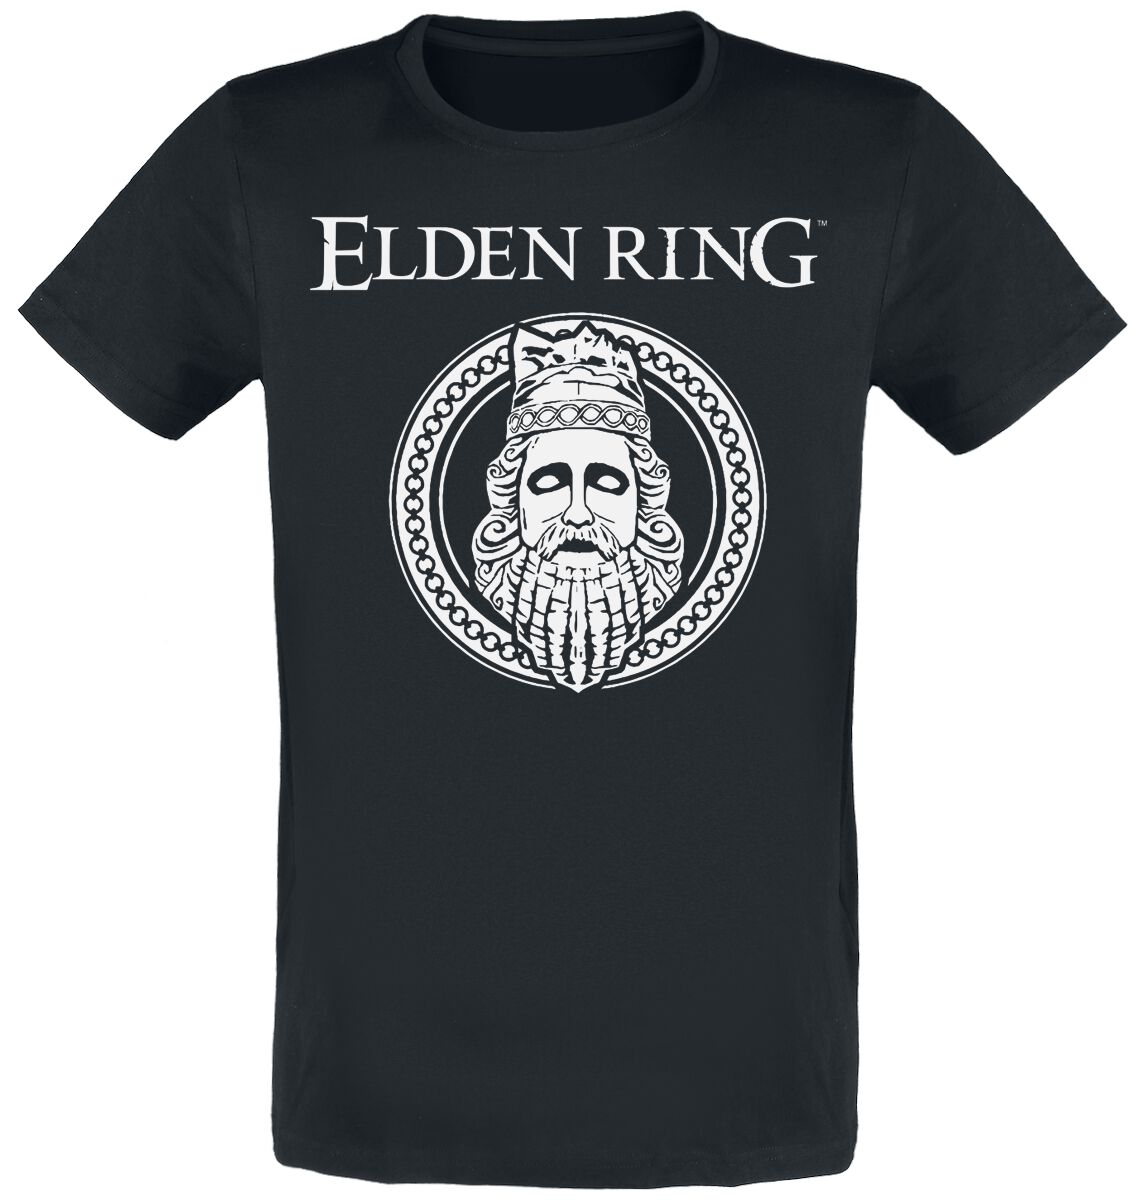 Elden Ring - Gaming T-Shirt - King - S bis XXL - für Männer - Größe XXL - schwarz